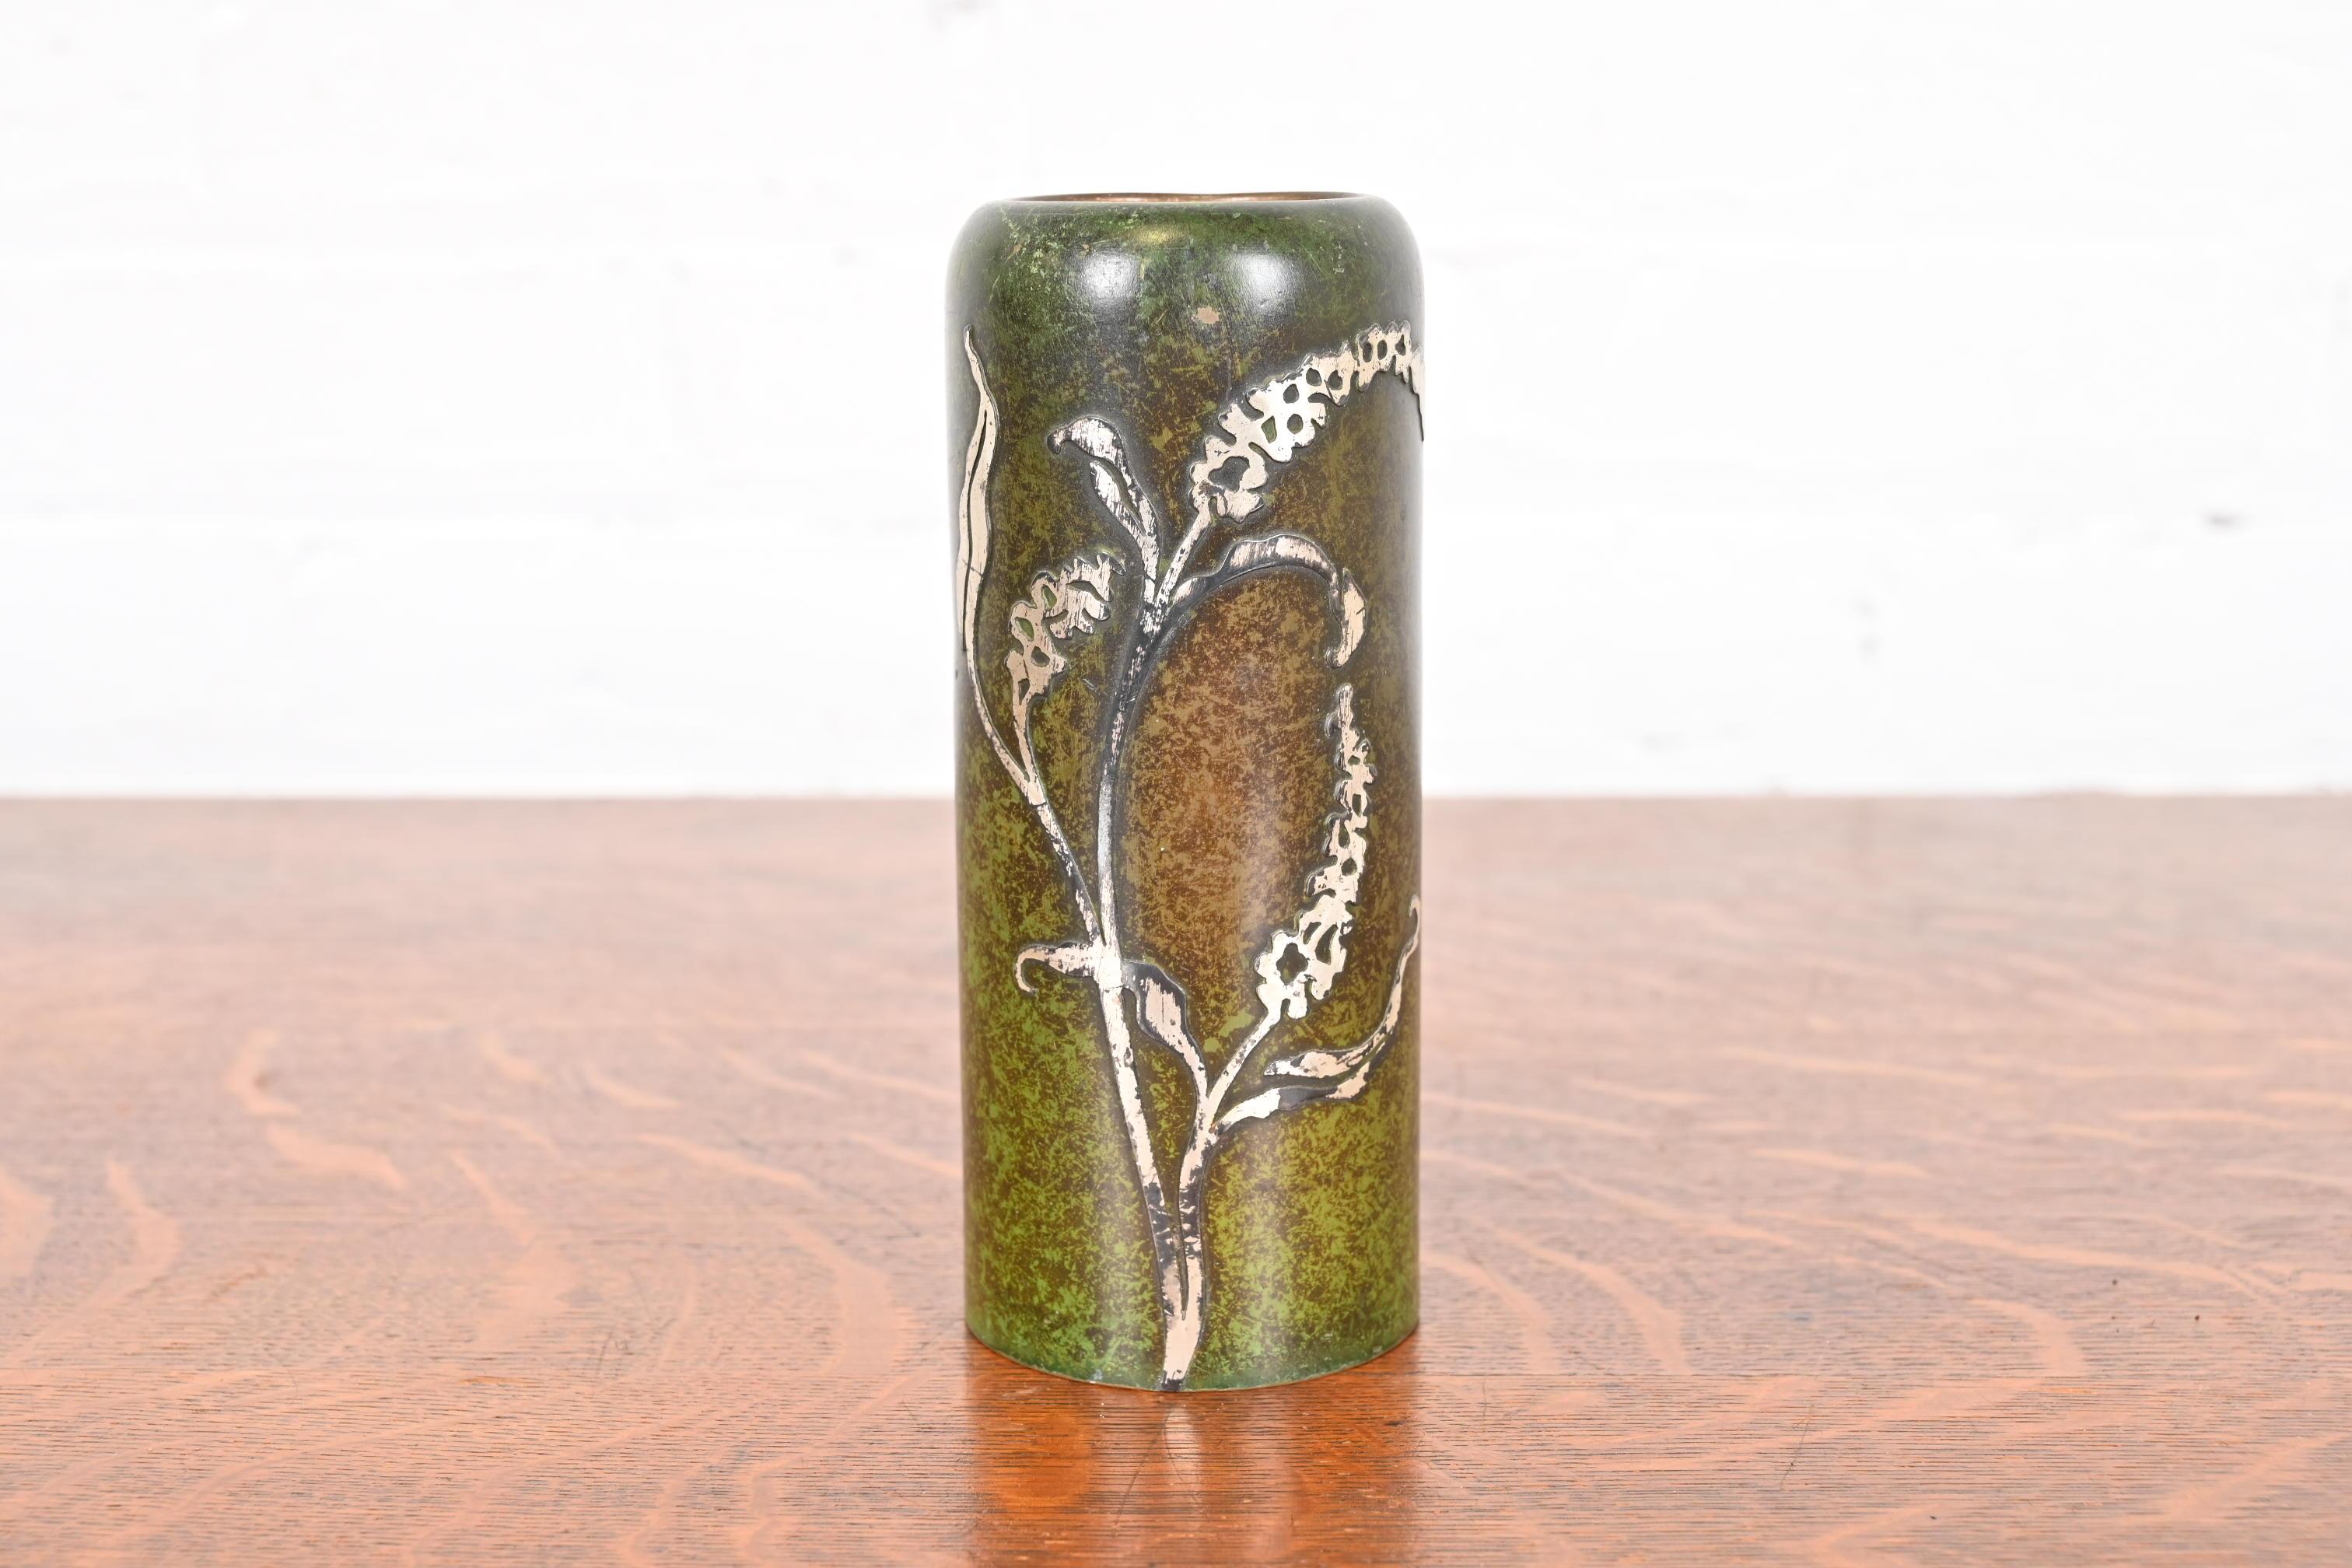 Magnifique vase floral en argent sterling et bronze d'époque Arts & Crafts avec patine verte vert-de-gris

Par Heintz Art Metal Shop

États-Unis d'Amérique, début du 20e siècle

Mesures : 2,5 